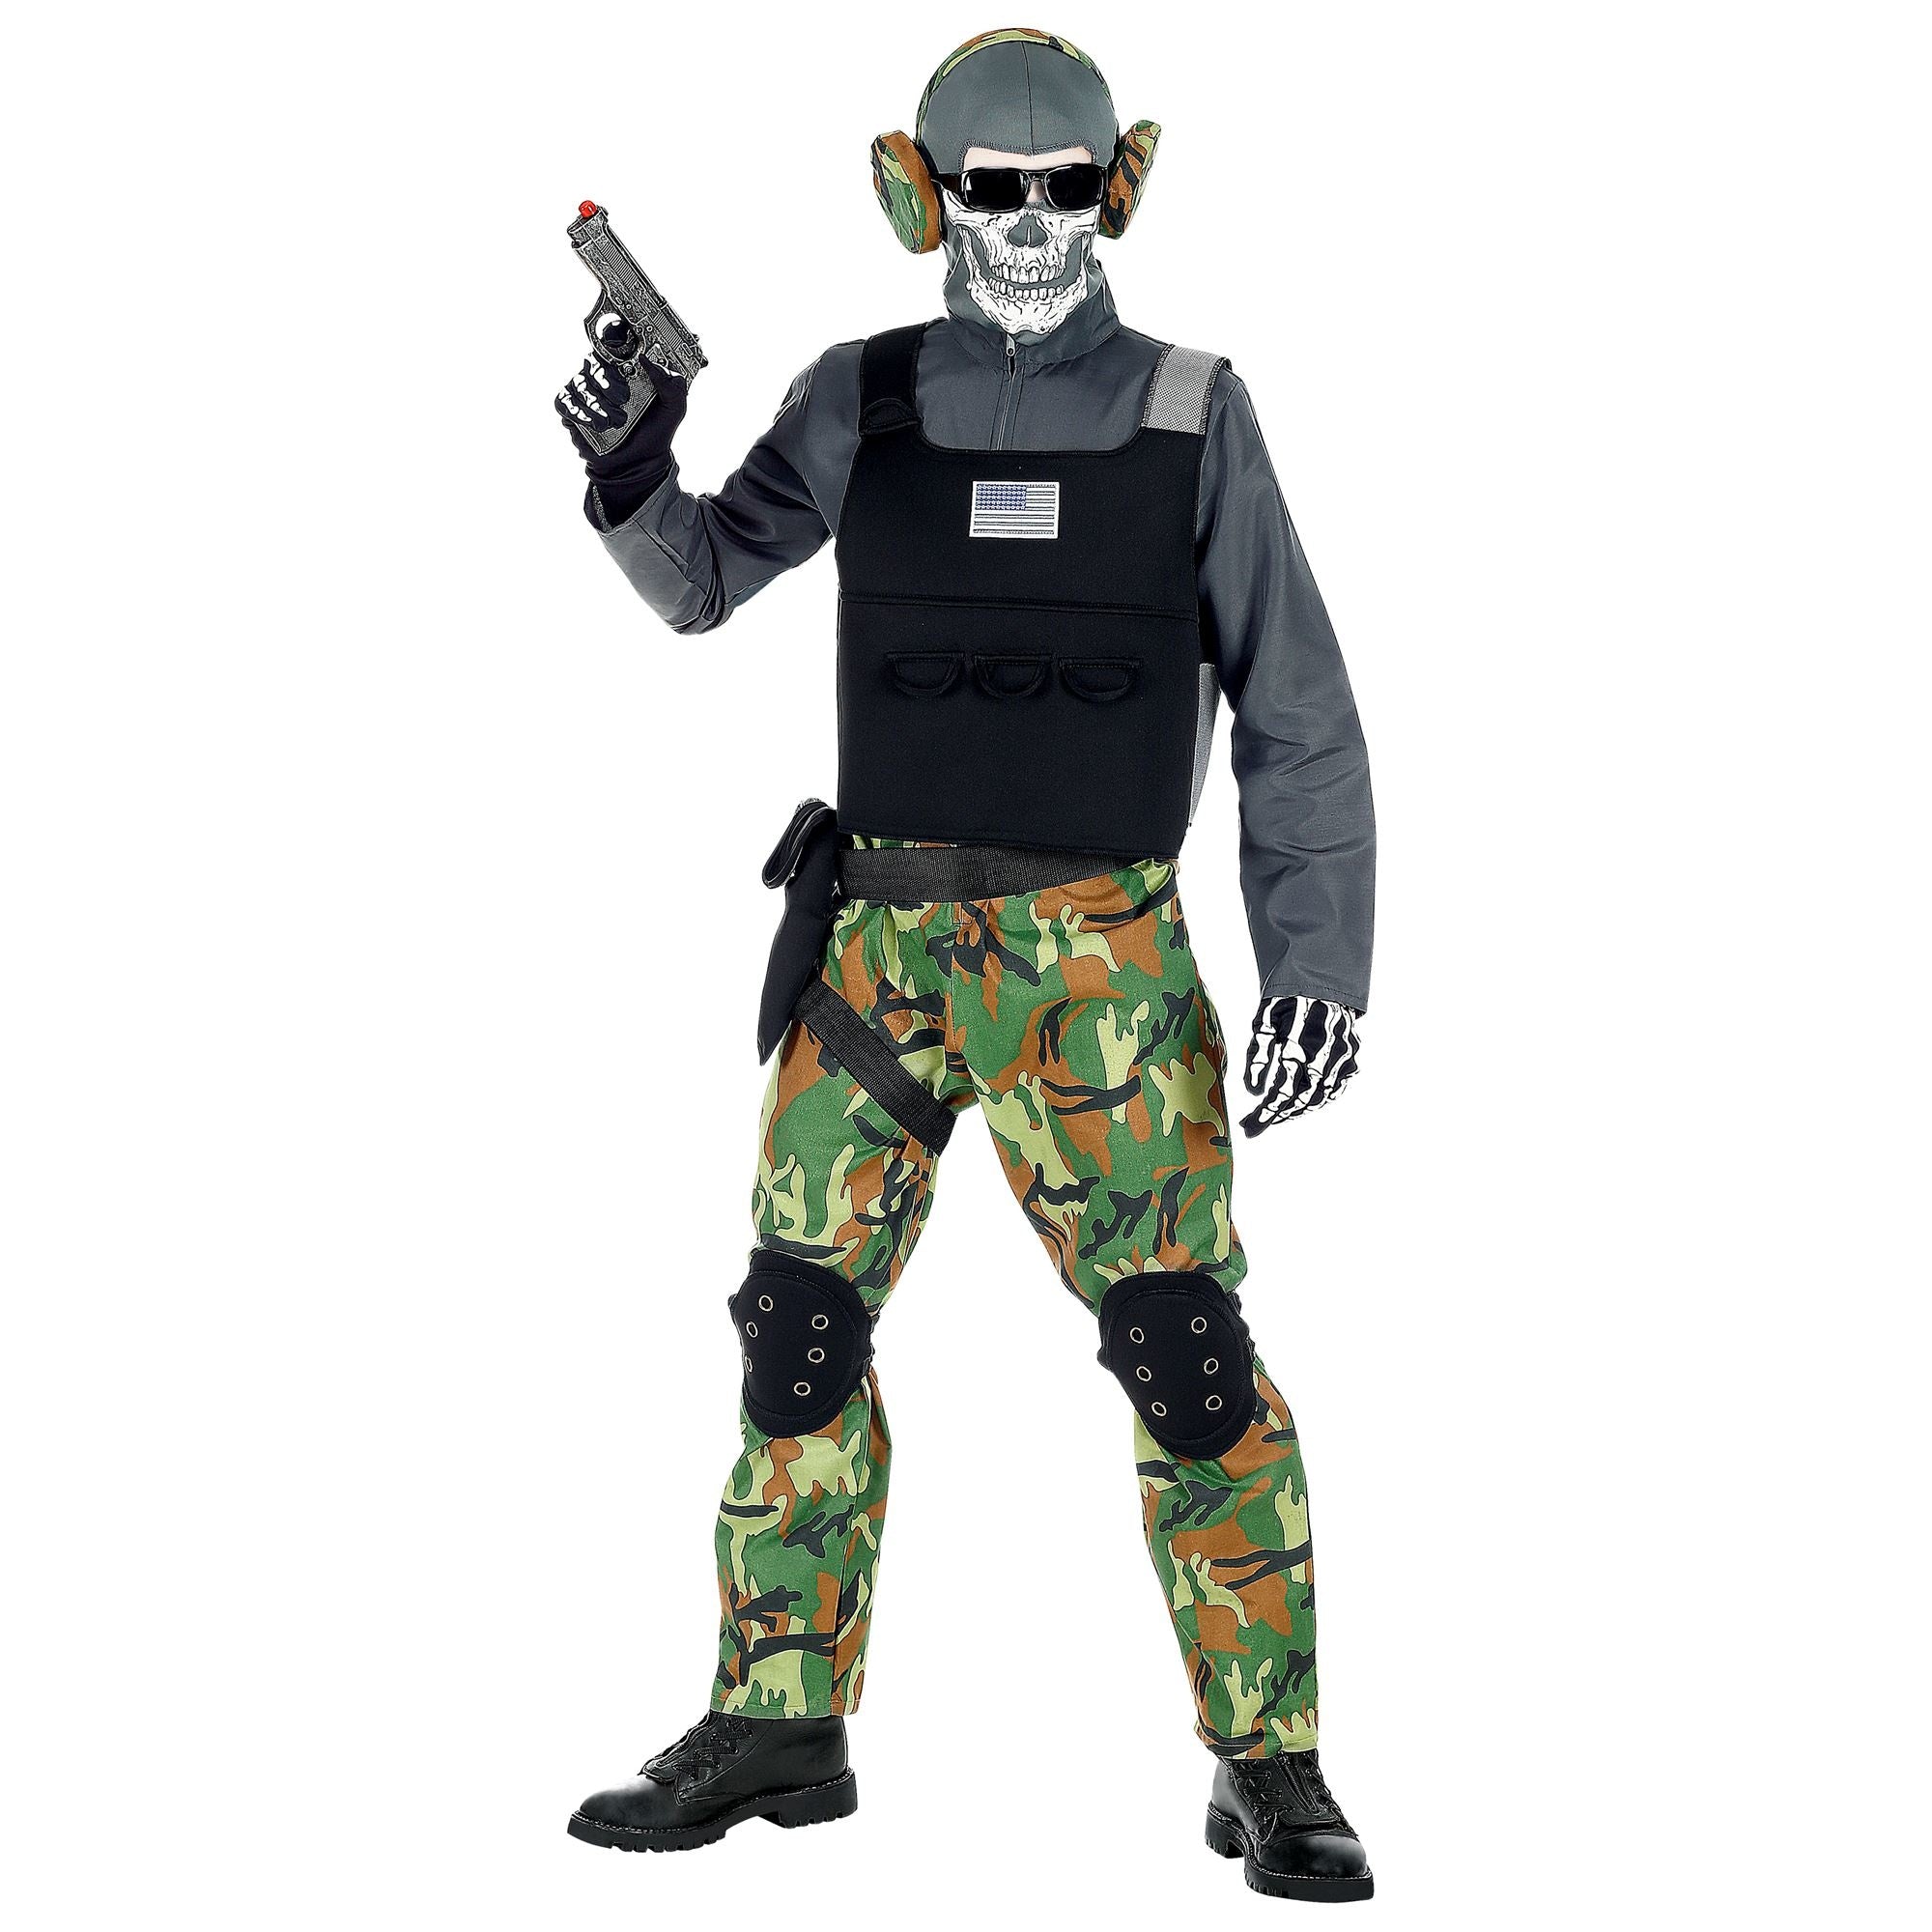 Widmann - Leger & Oorlog Kostuum - Zombie Soldaat Eeuwige Slagvelden Groen Camouflage - Jongen - groen,zwart,grijs - Maat 140 - Halloween - Verkleedkleding